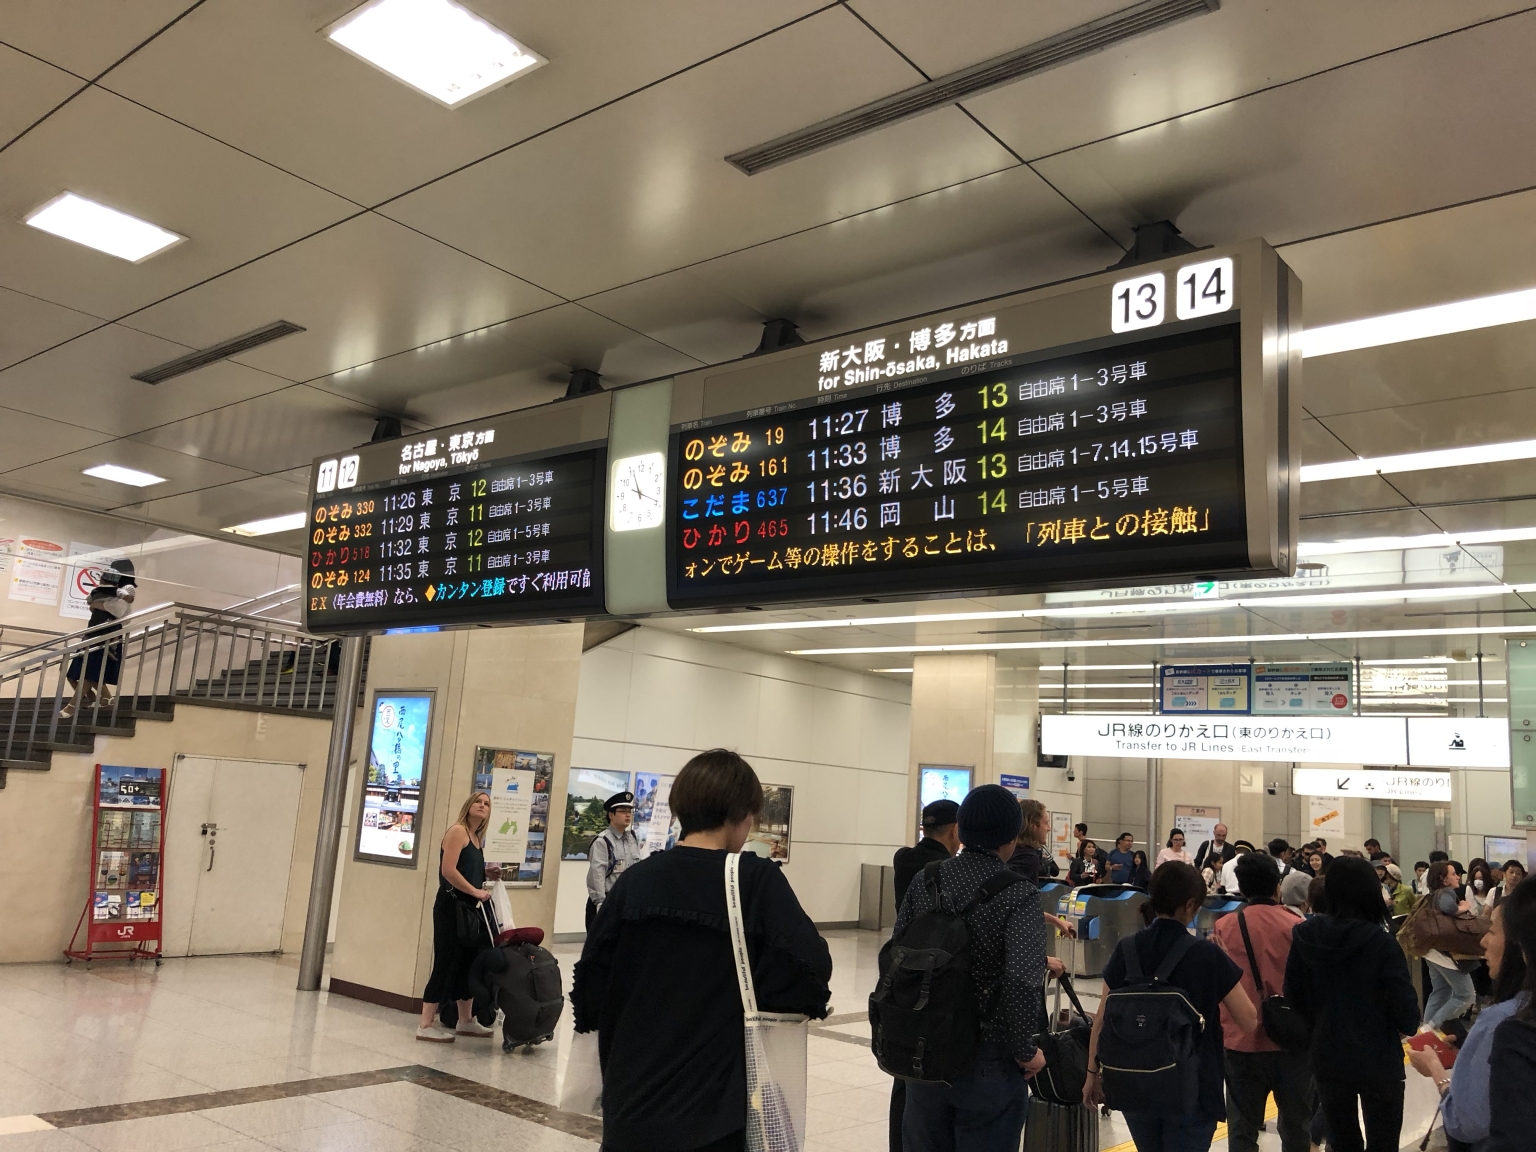 Awaiting Shinkansen departure